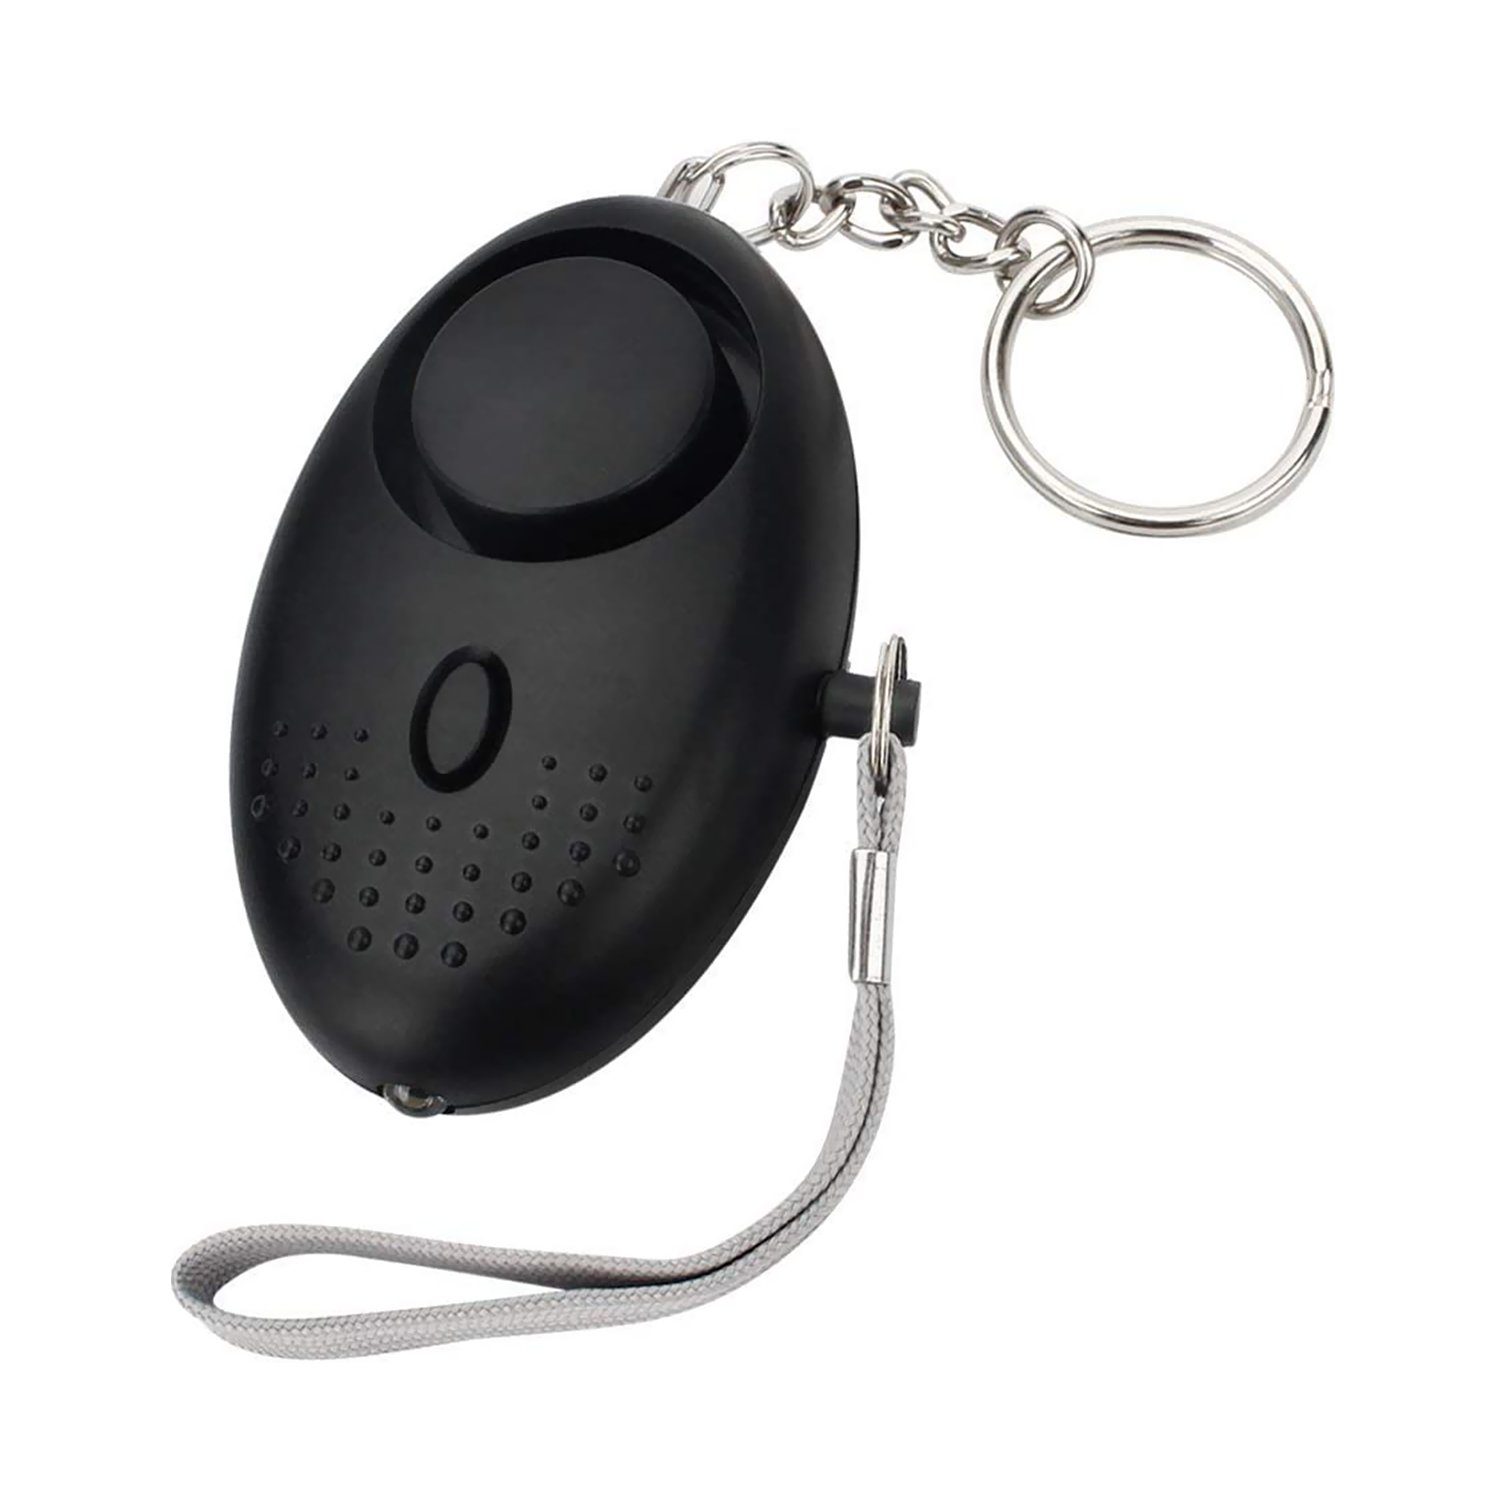 IVSO 130DB Personal Persönlicher Security Alarmsirene Schlüsselanhänger,Notrufalarm  Alarmsirene (mit LED-Licht Notfall Selbstverteidigung Security Alarm)